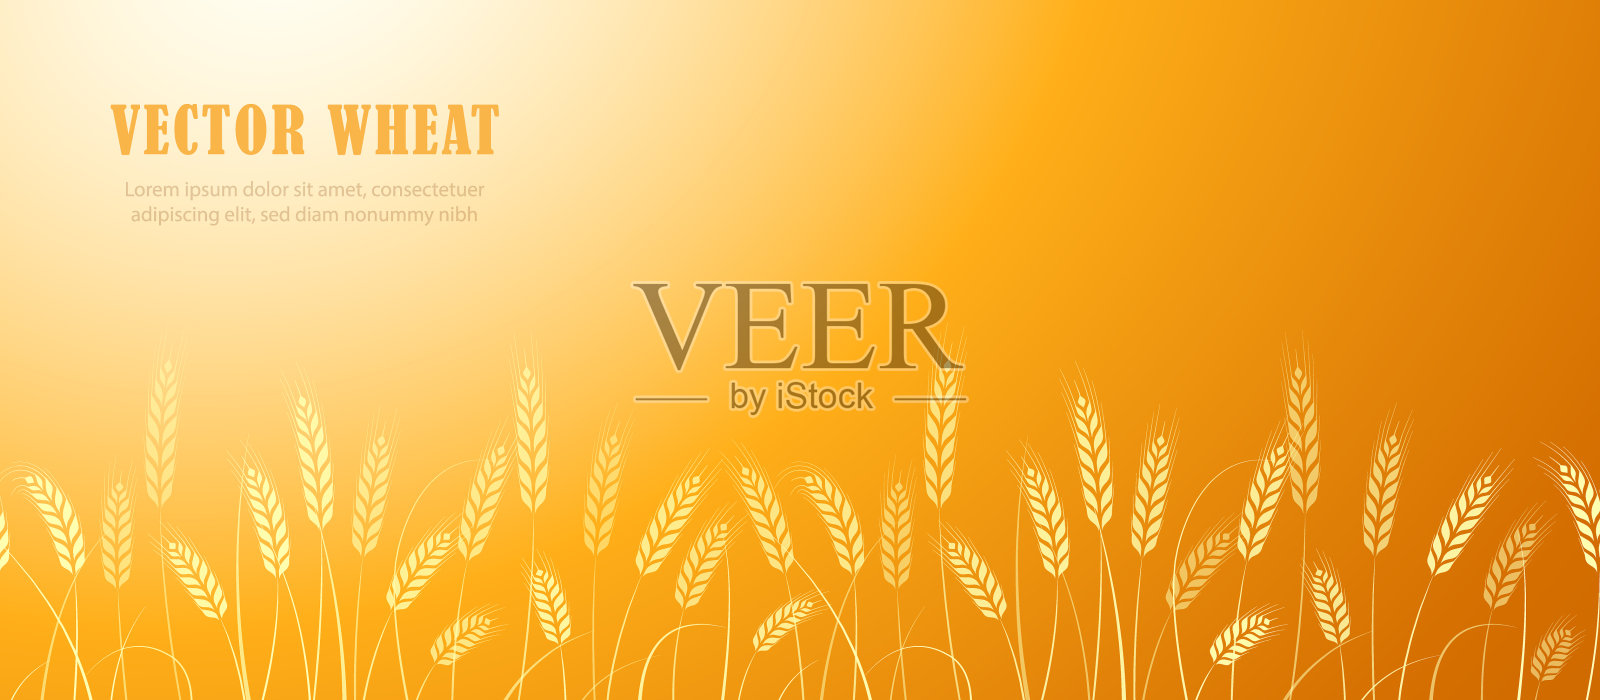 小麦穗在田间横边图案上以文字为主。矢量图插画图片素材